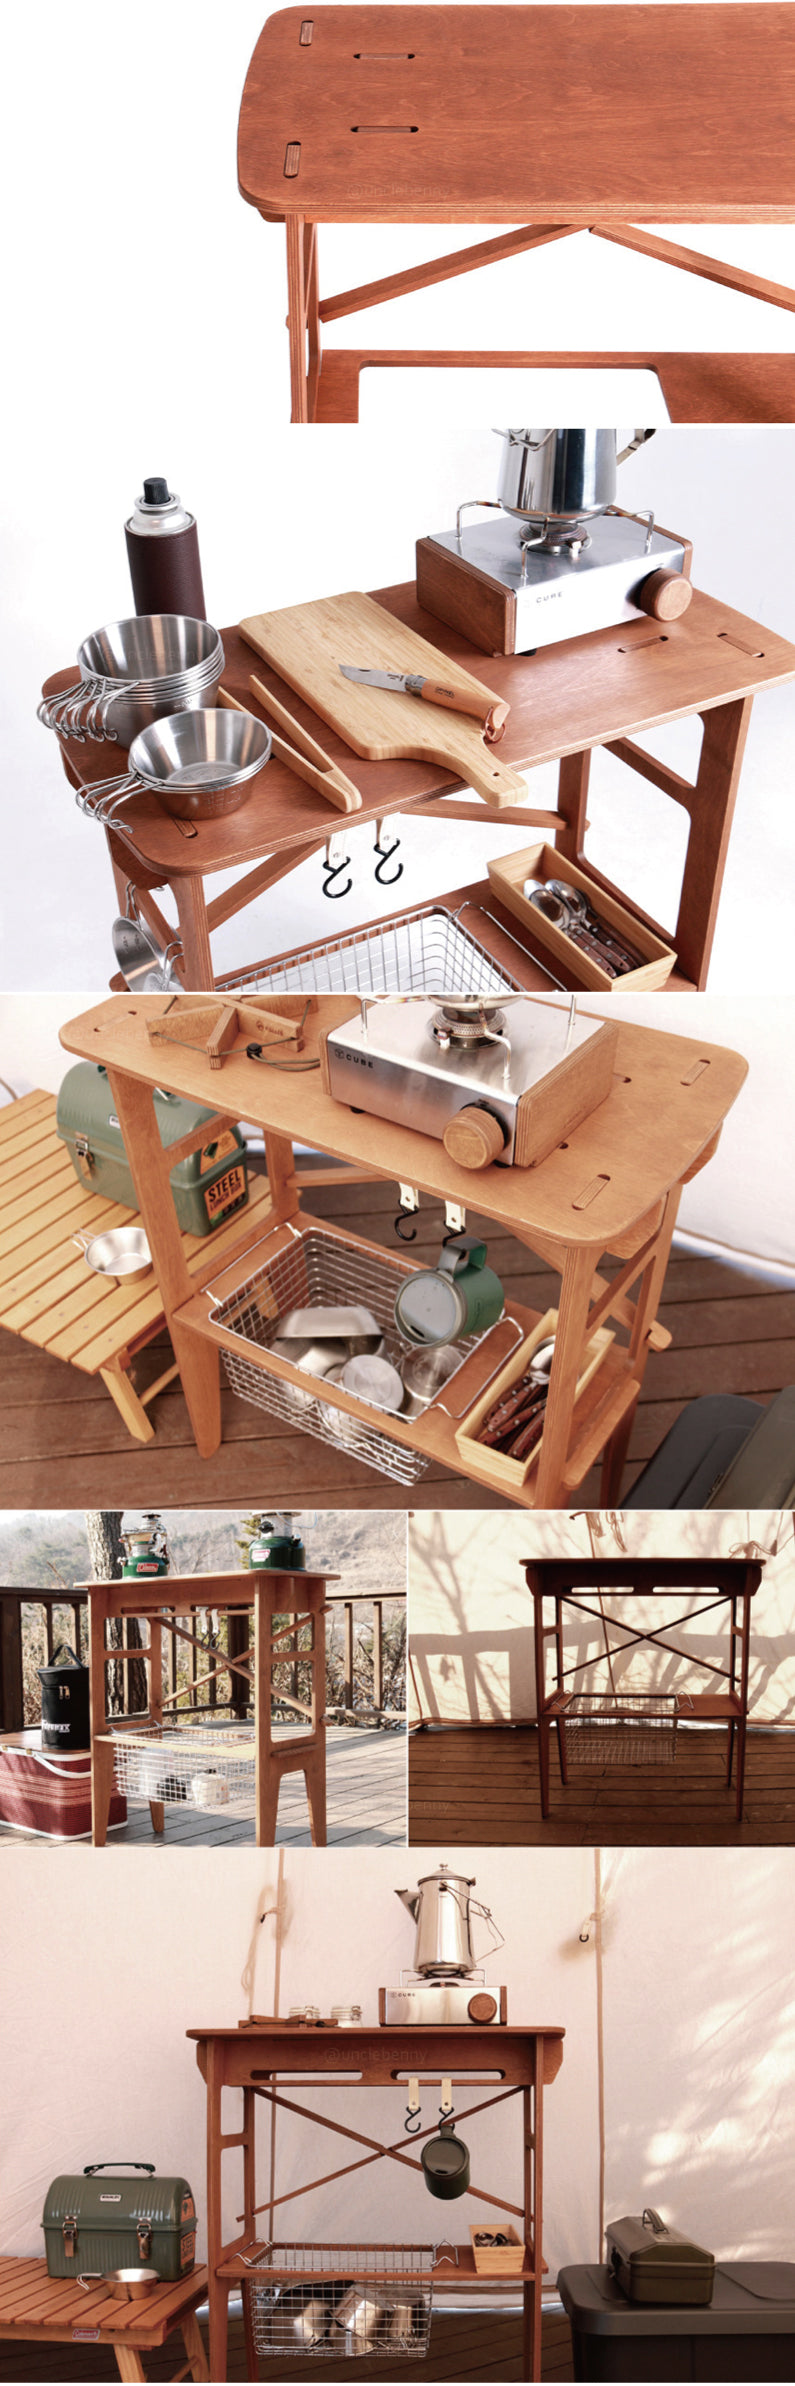 韓國holler • 木作置物架/延伸邊桌系列/戶外廚房/露營廚房